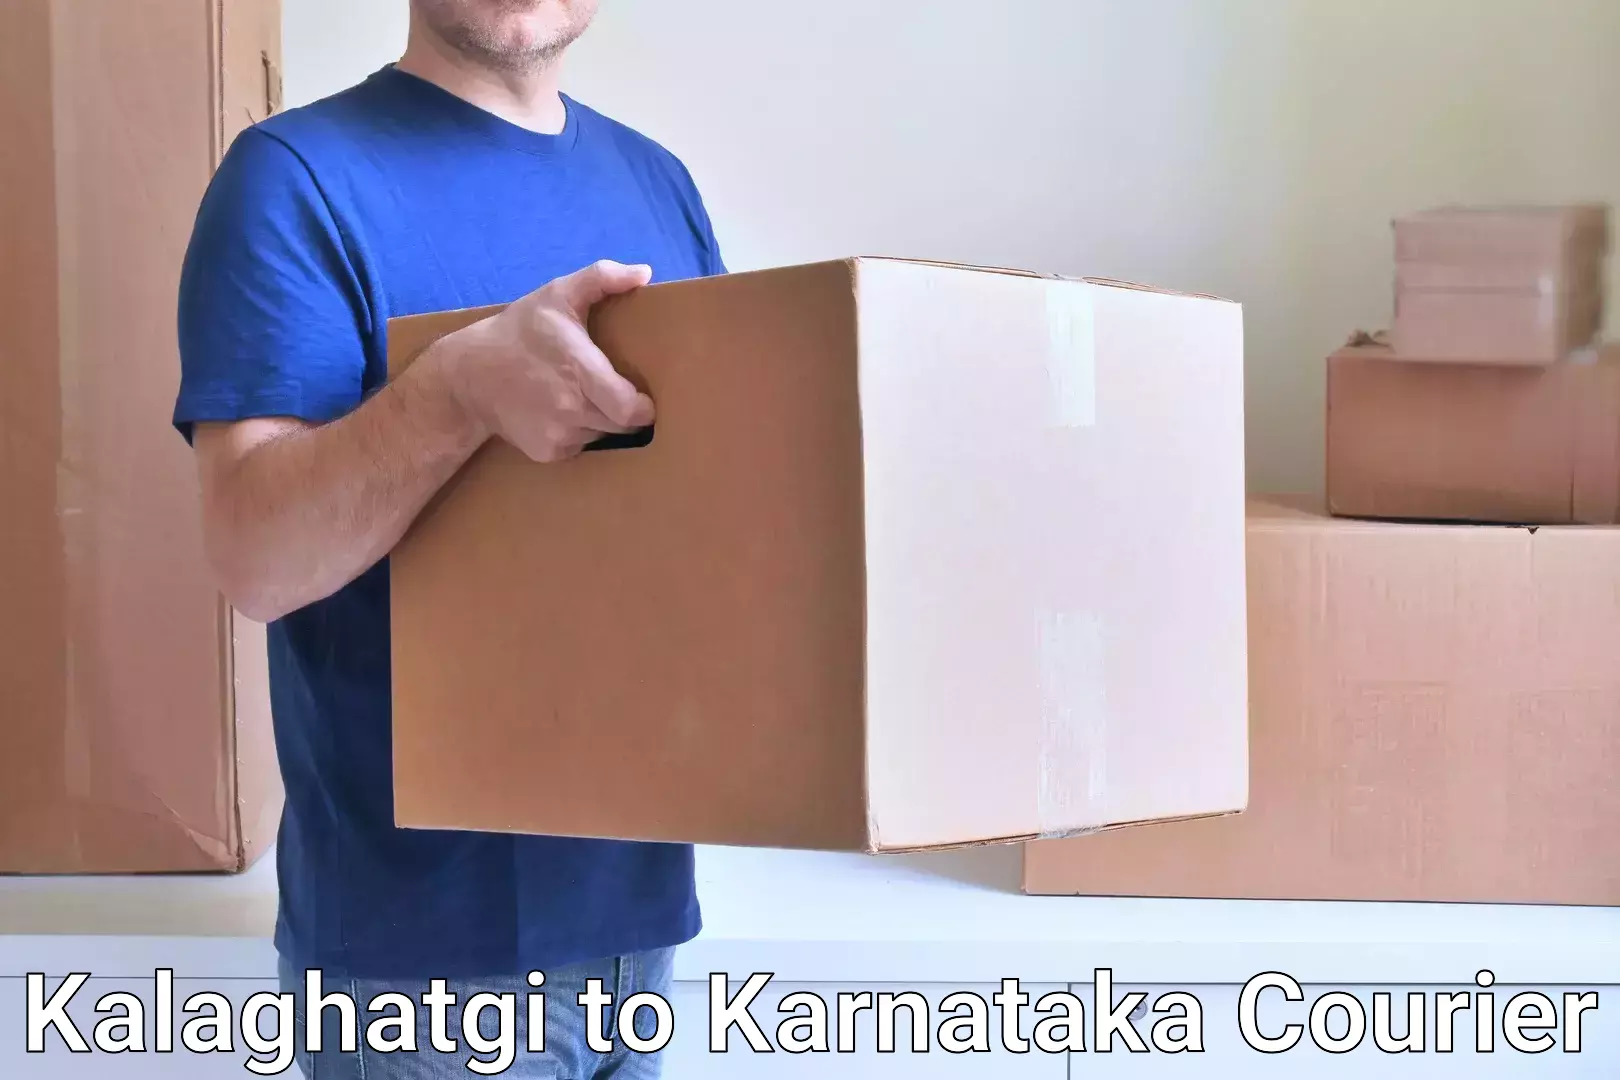 Global delivery options in Kalaghatgi to Yadgiri